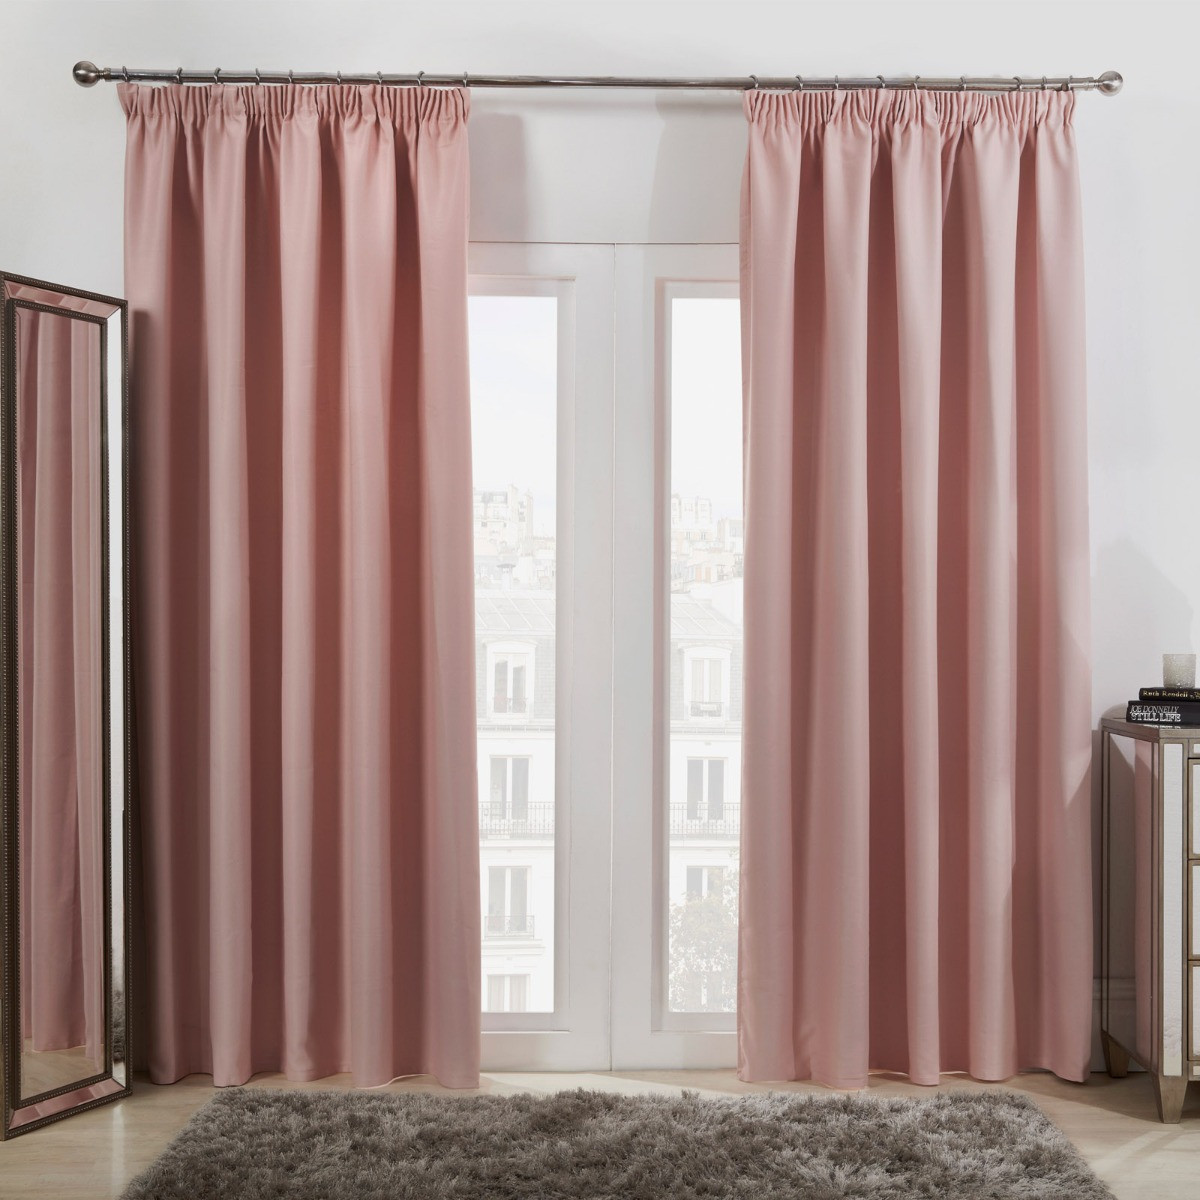 Dreamscene Pencil Pleat Blackout Curtains - Blush Pink, 66" x 54">